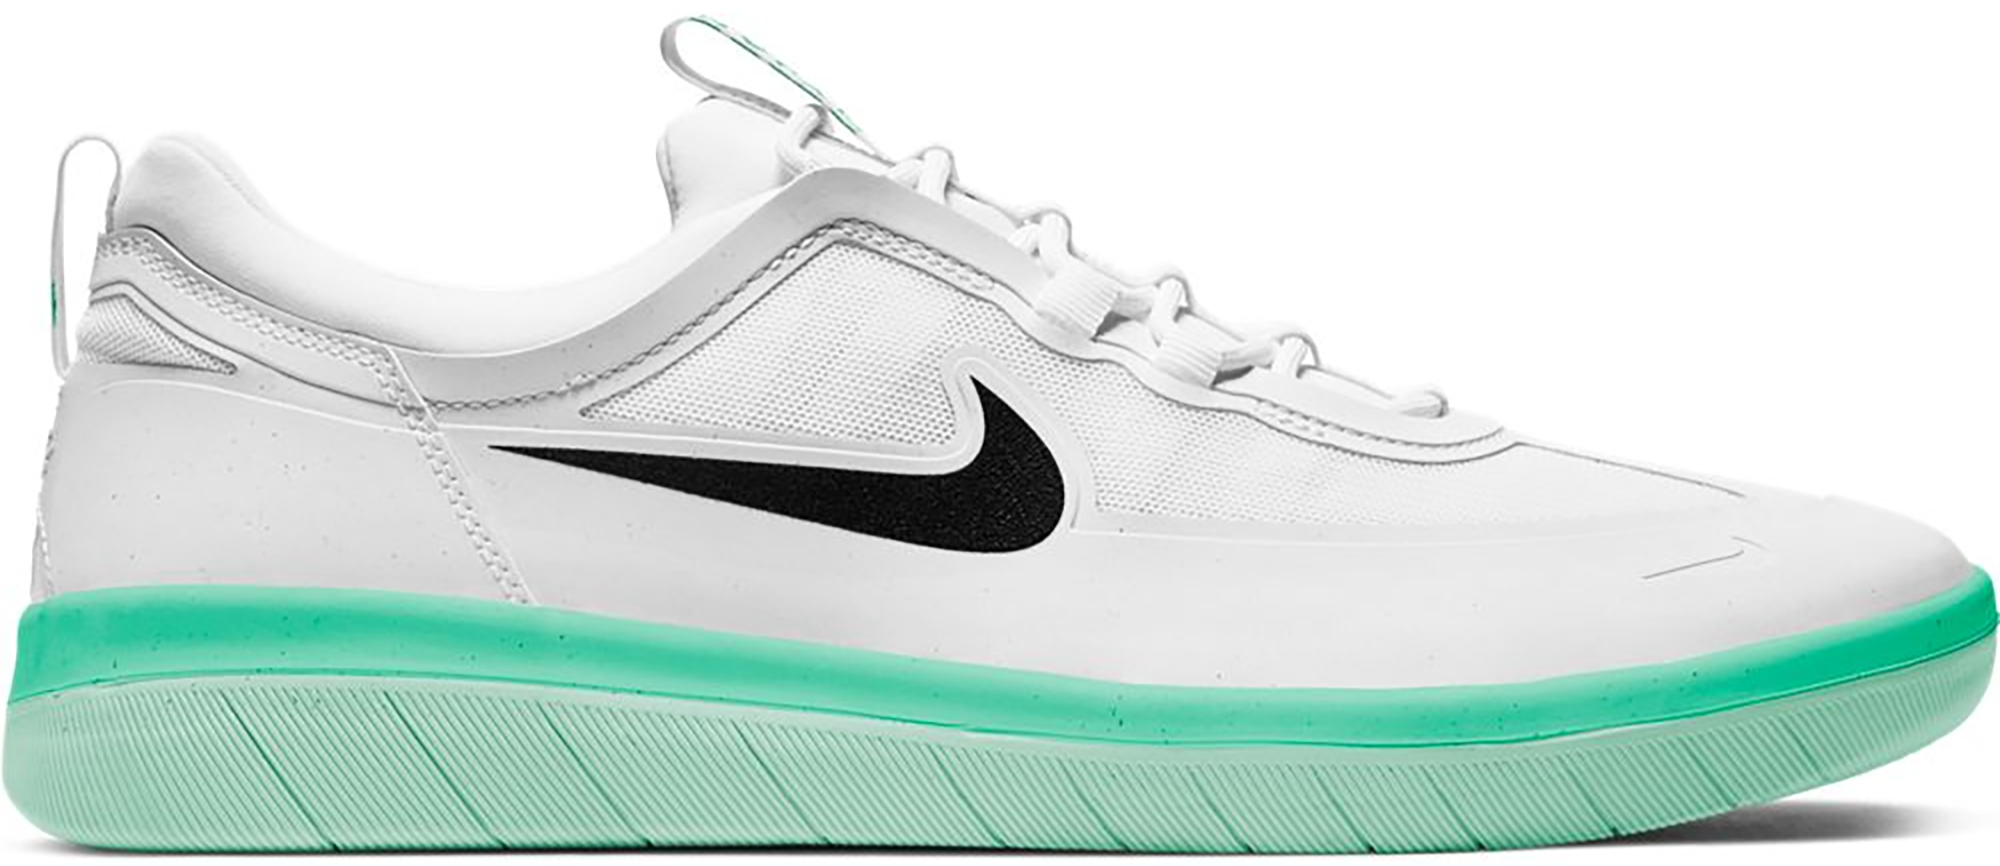 Nike SB Nyjah Free 2 White Black Green 